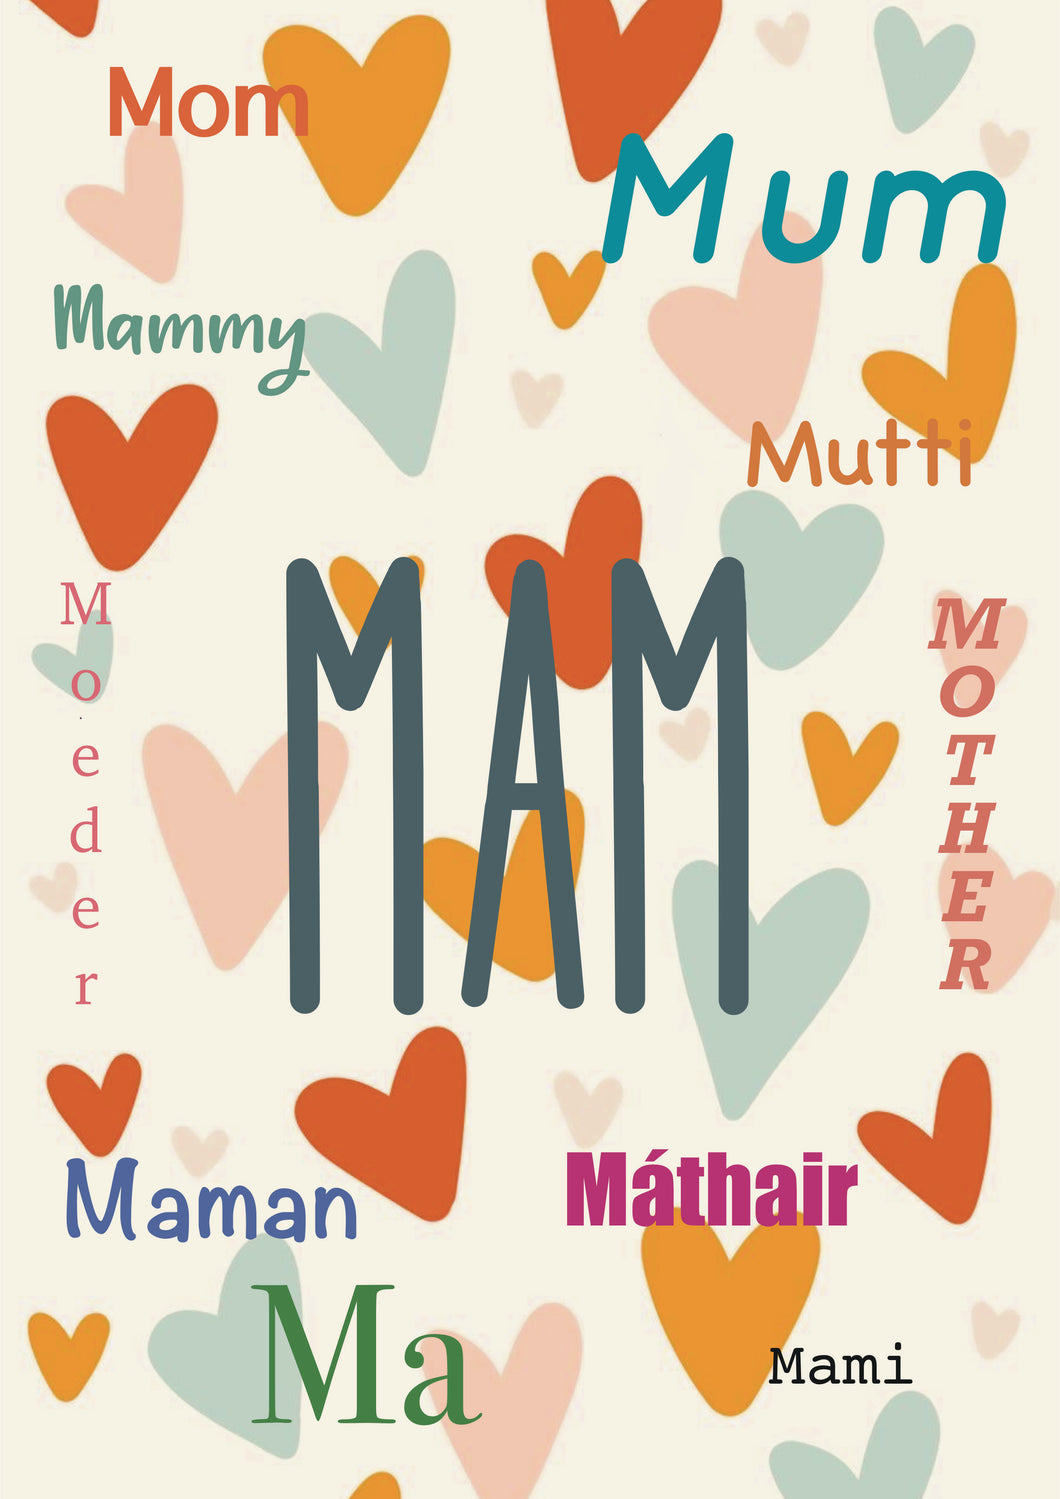 Mam, Mammy, Máthair, etc (Card)